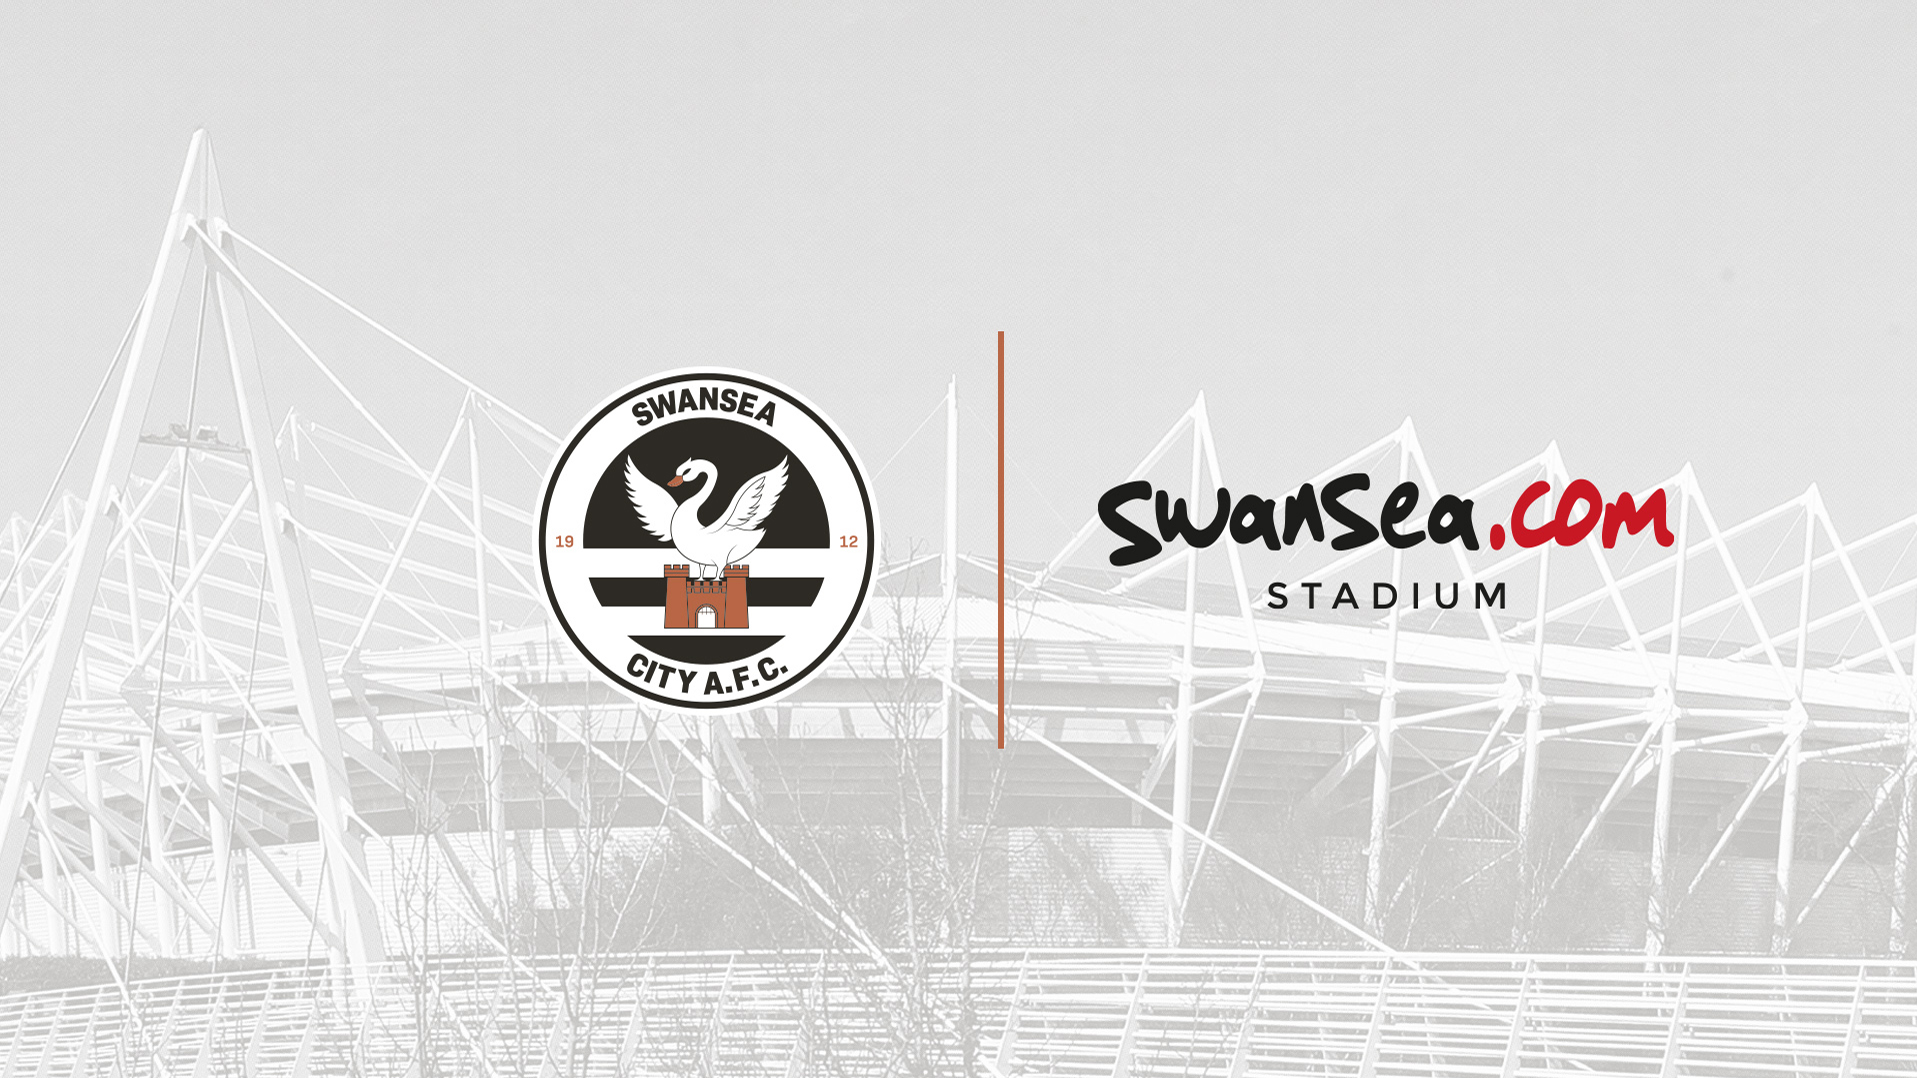 Swansea.com Stadium artwork